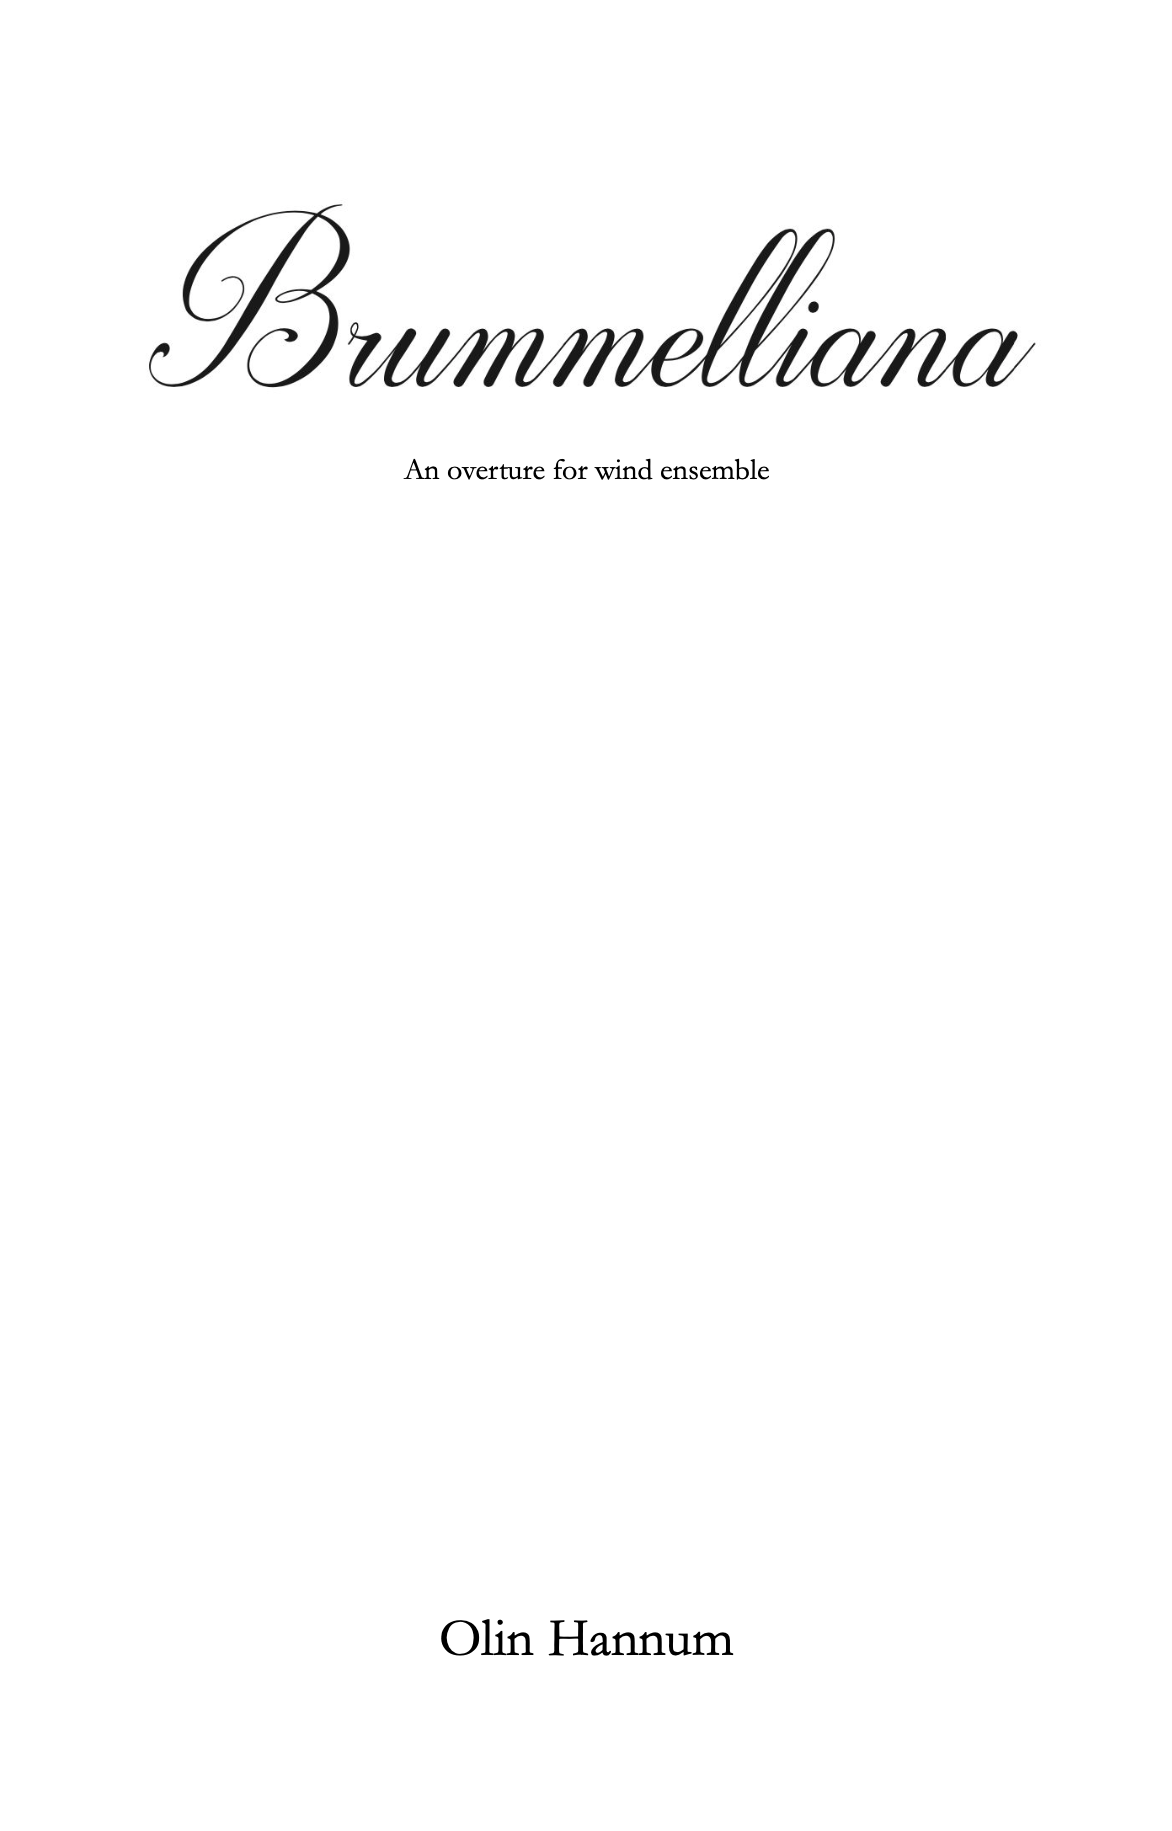 Brummelliana by Olin Hannum